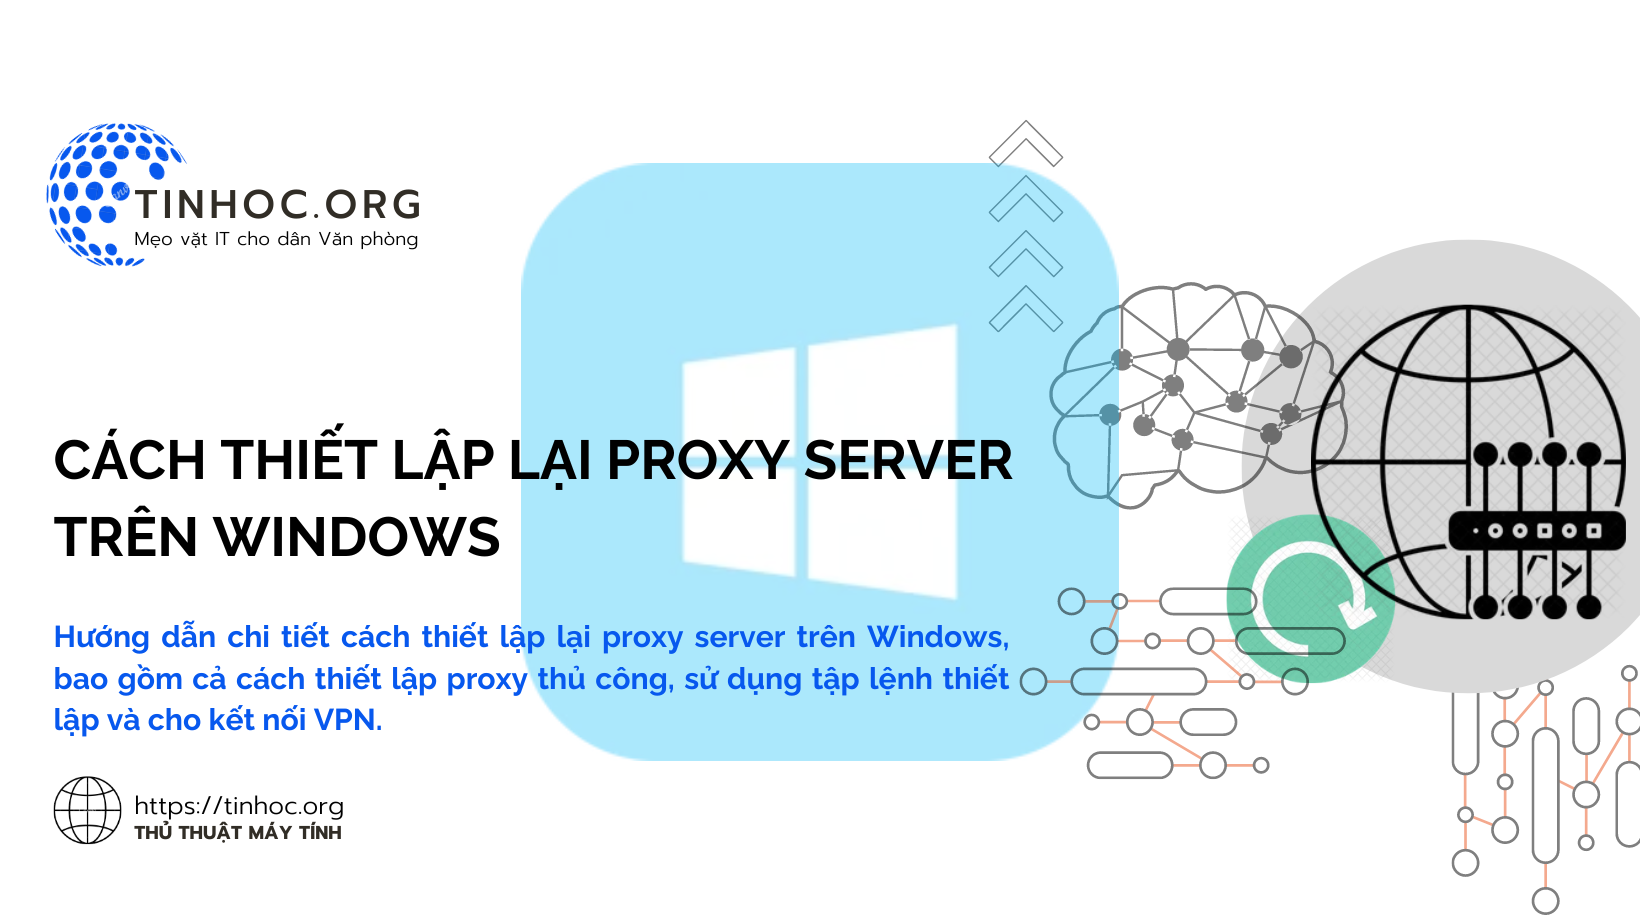 Hướng dẫn chi tiết cách thiết lập lại proxy server trên Windows, bao gồm cả cách thiết lập proxy thủ công, sử dụng tập lệnh thiết lập và cho kết nối VPN.